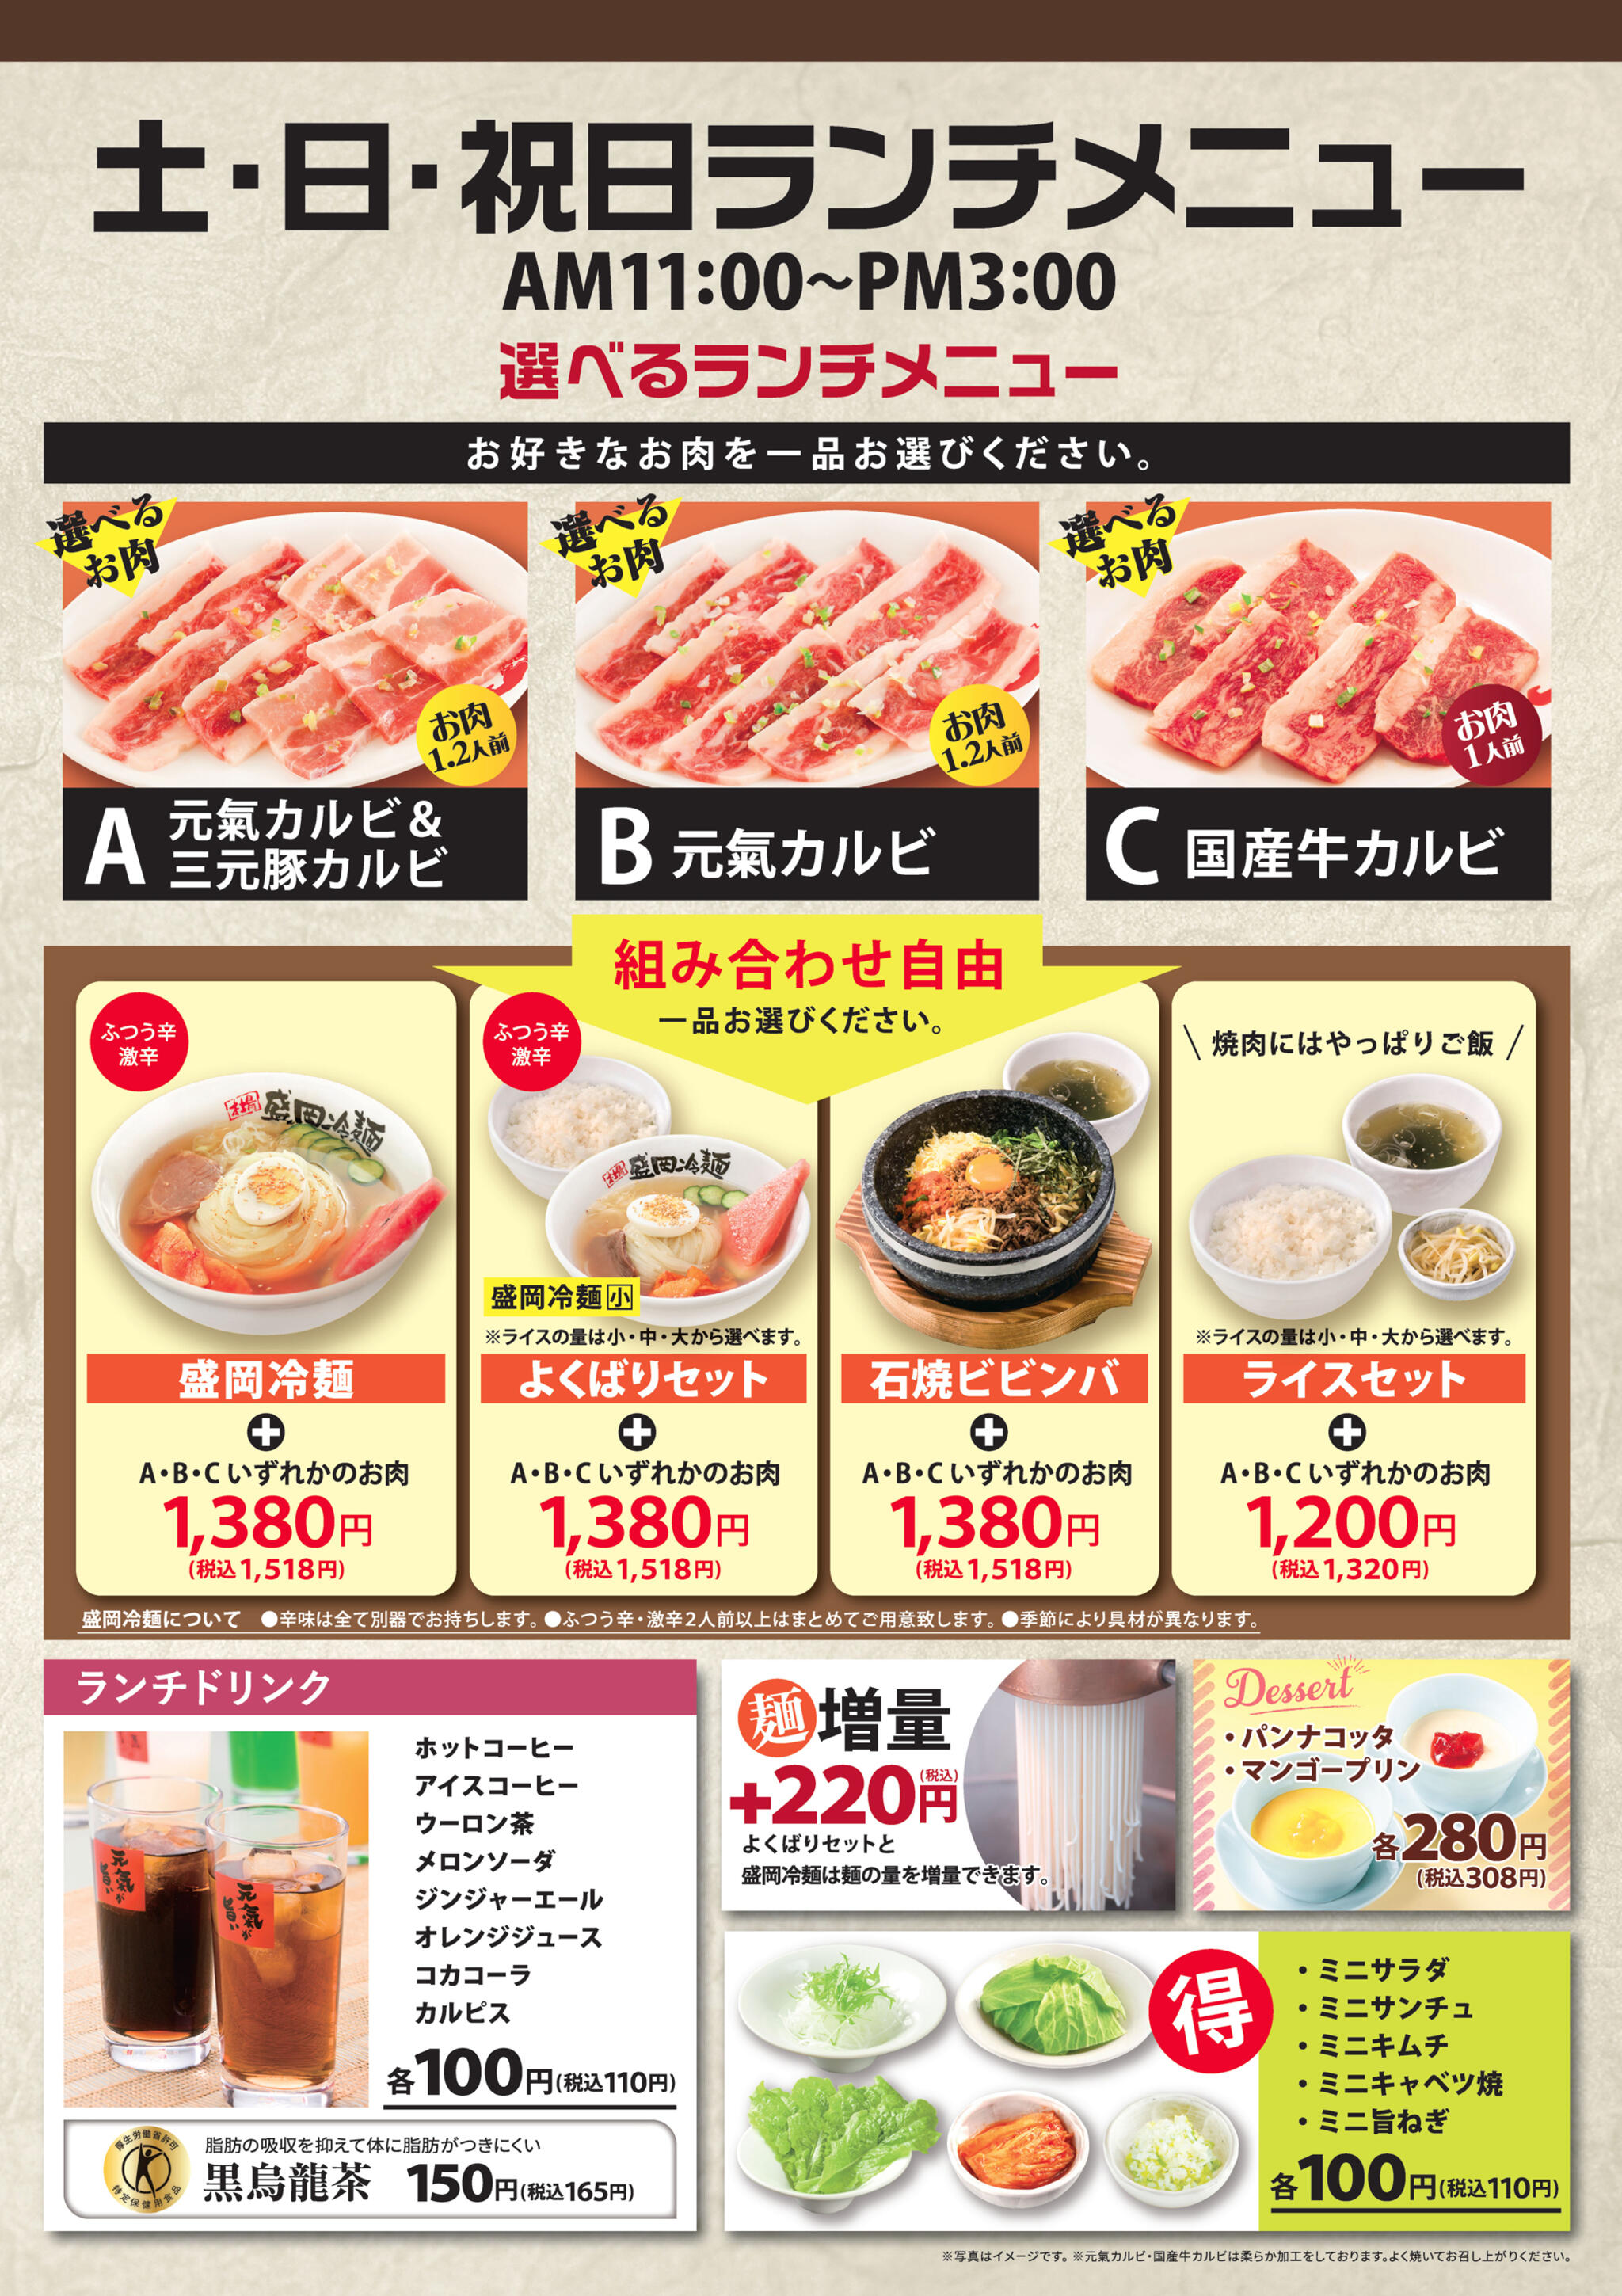 焼肉冷麺やまなか家 上田バイパス店からのお知らせ(【GW期間ランチメニューについて】)に関する写真